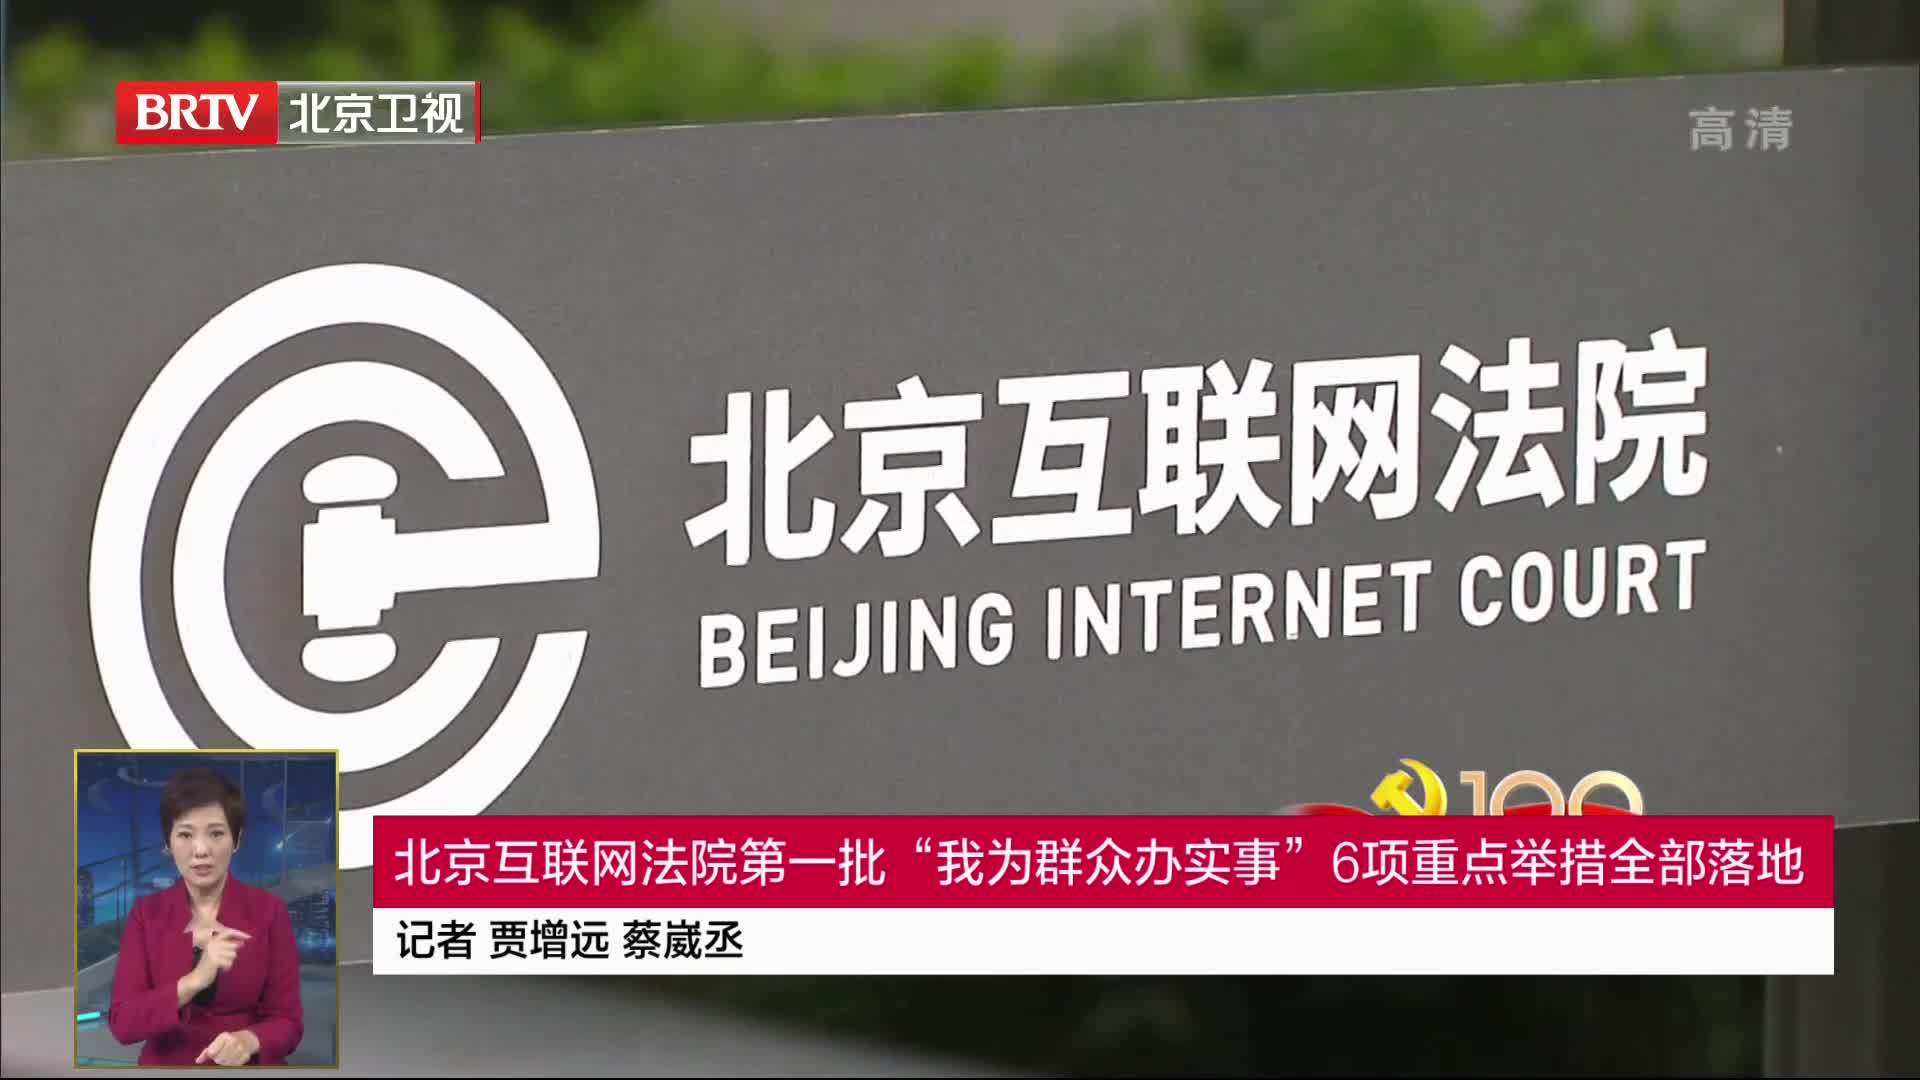 北京互联网法院第一批“我为群众办实事”6项重点举措全部落地